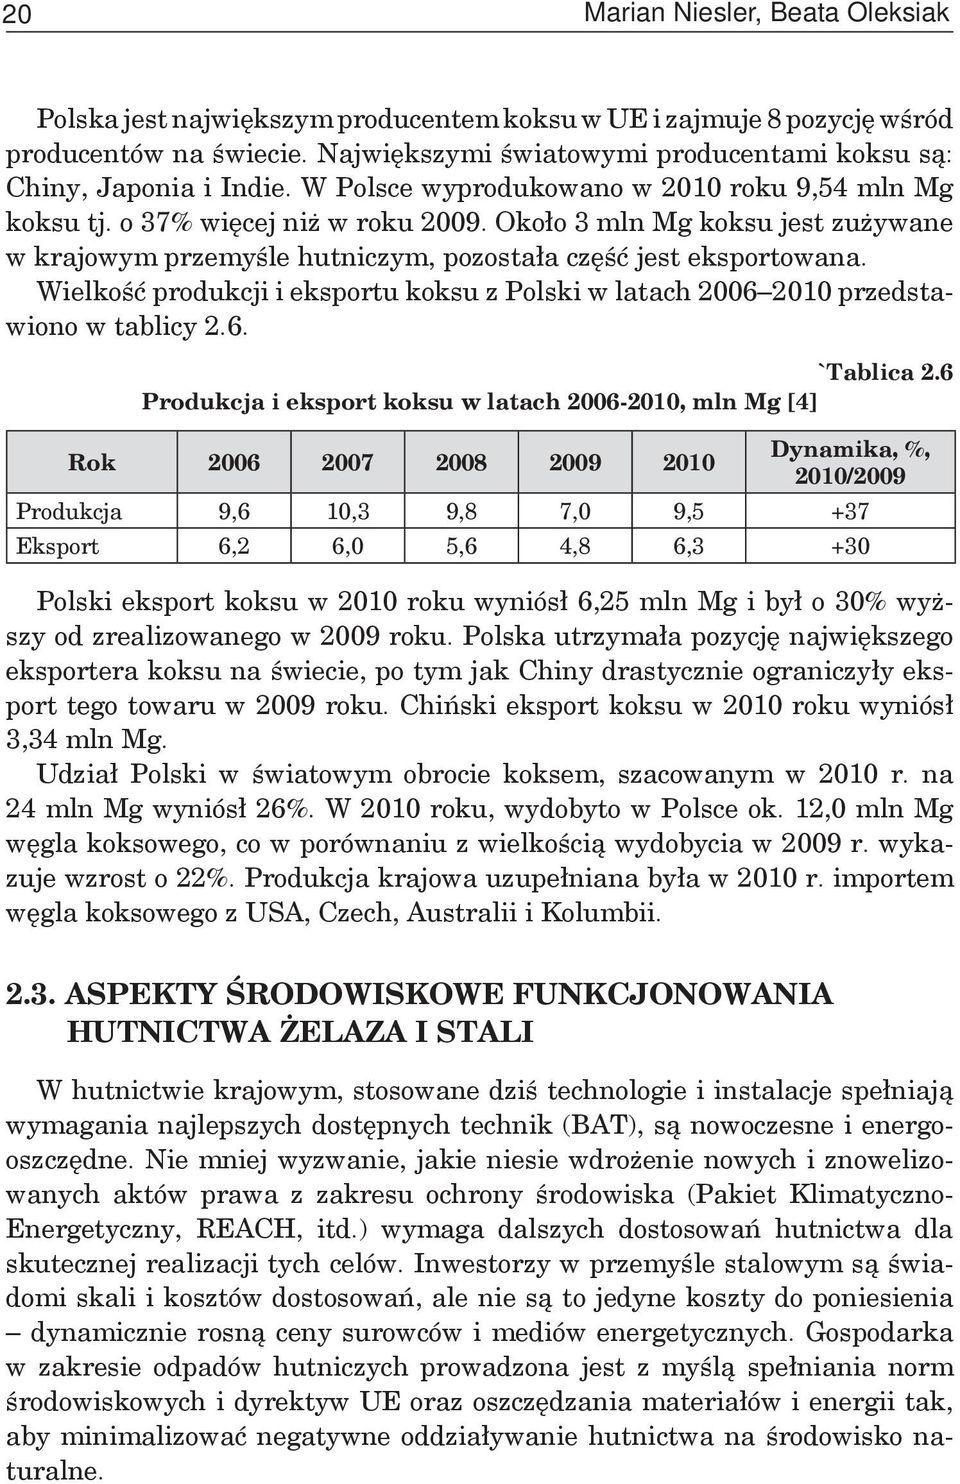 Około 3 mln Mg koksu jest zużywane w krajowym przemyśle hutniczym, pozostała część jest eksportowana. Wielkość produkcji i eksportu koksu z Polski w latach 2006 2010 przedstawiono w tablicy 2.6. `Tablica 2.